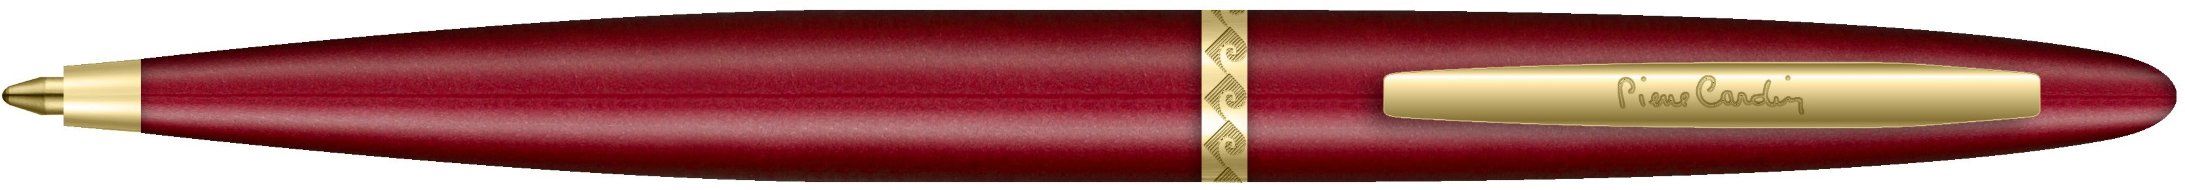 Ручка шариковая Pierre Cardin Capre, красная, позолота